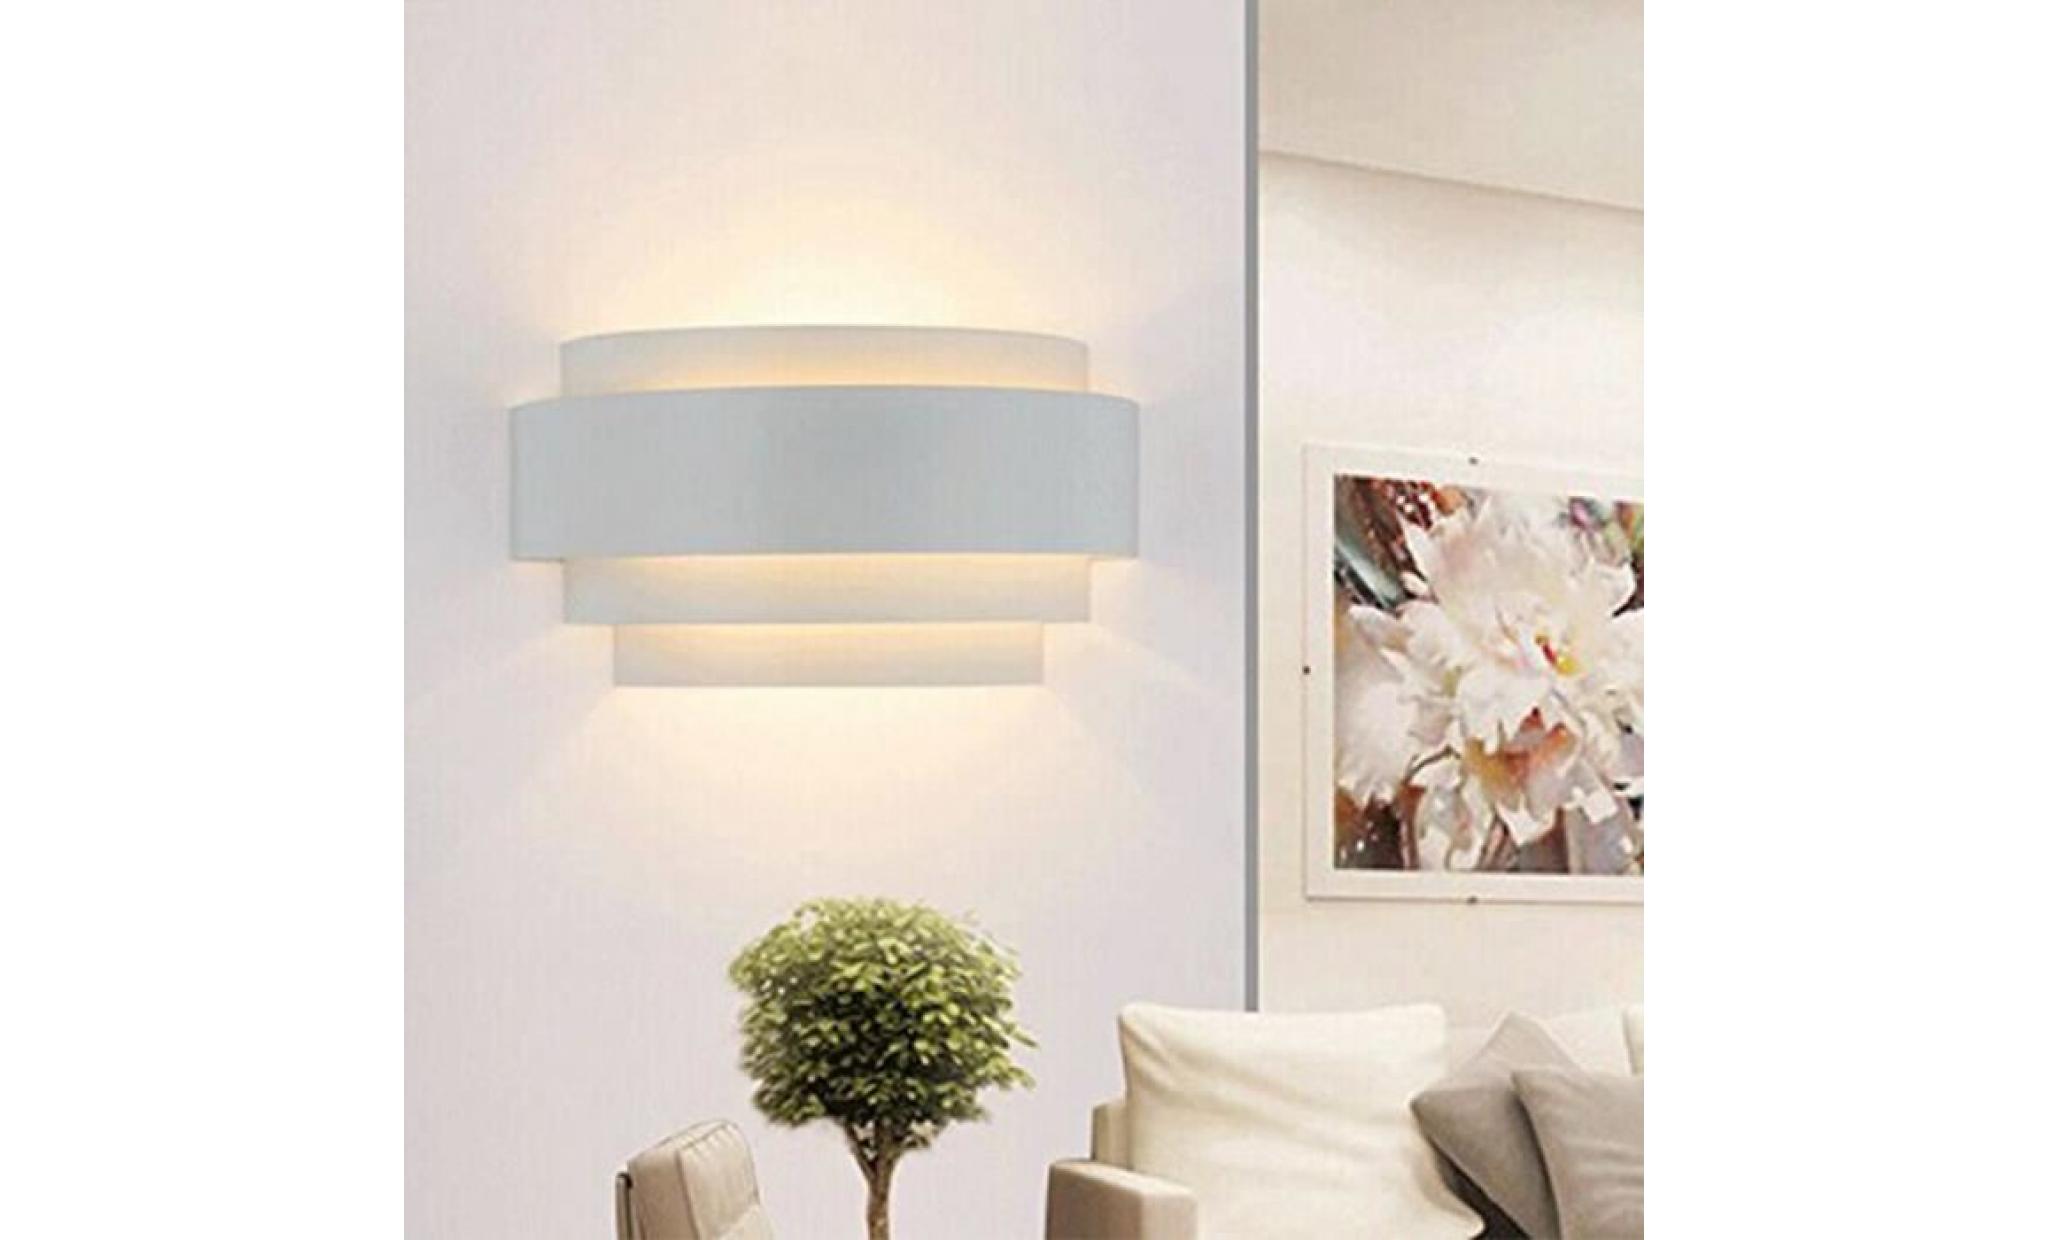 5w lampe murale ampoule e27 inclus eclairage décorative pour chambre escalier salon bureau(blanc chaud) pas cher